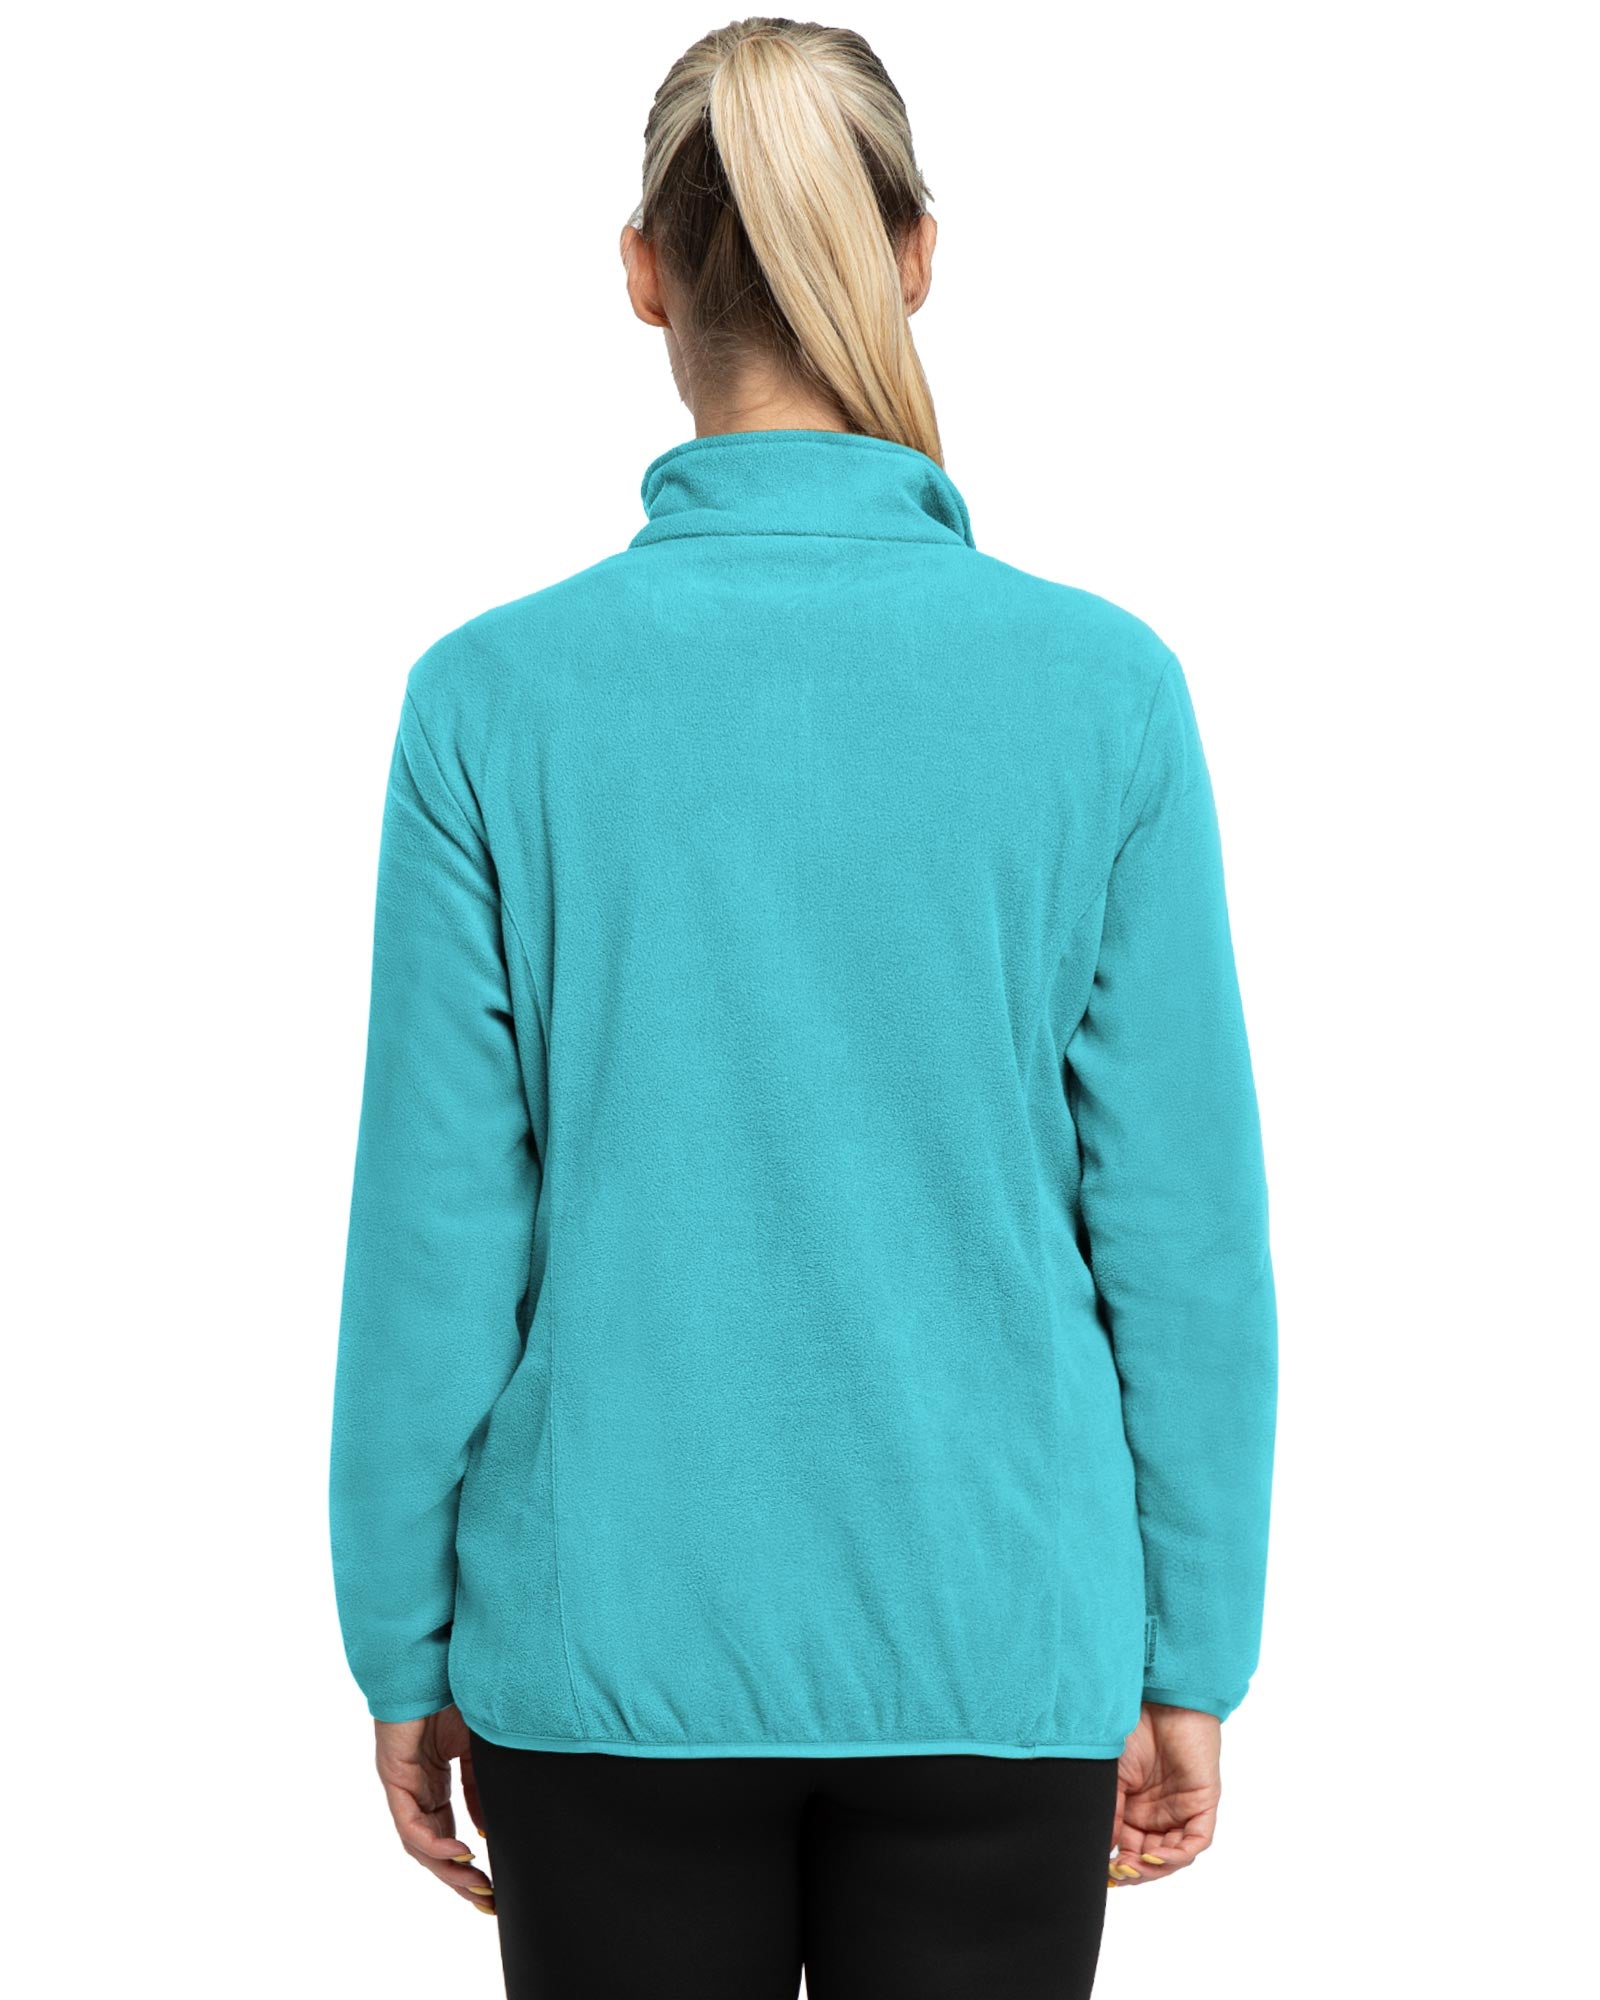 Women's Half Zip Long Sleeve Fleece Sweatshirt With Pockets Ladies